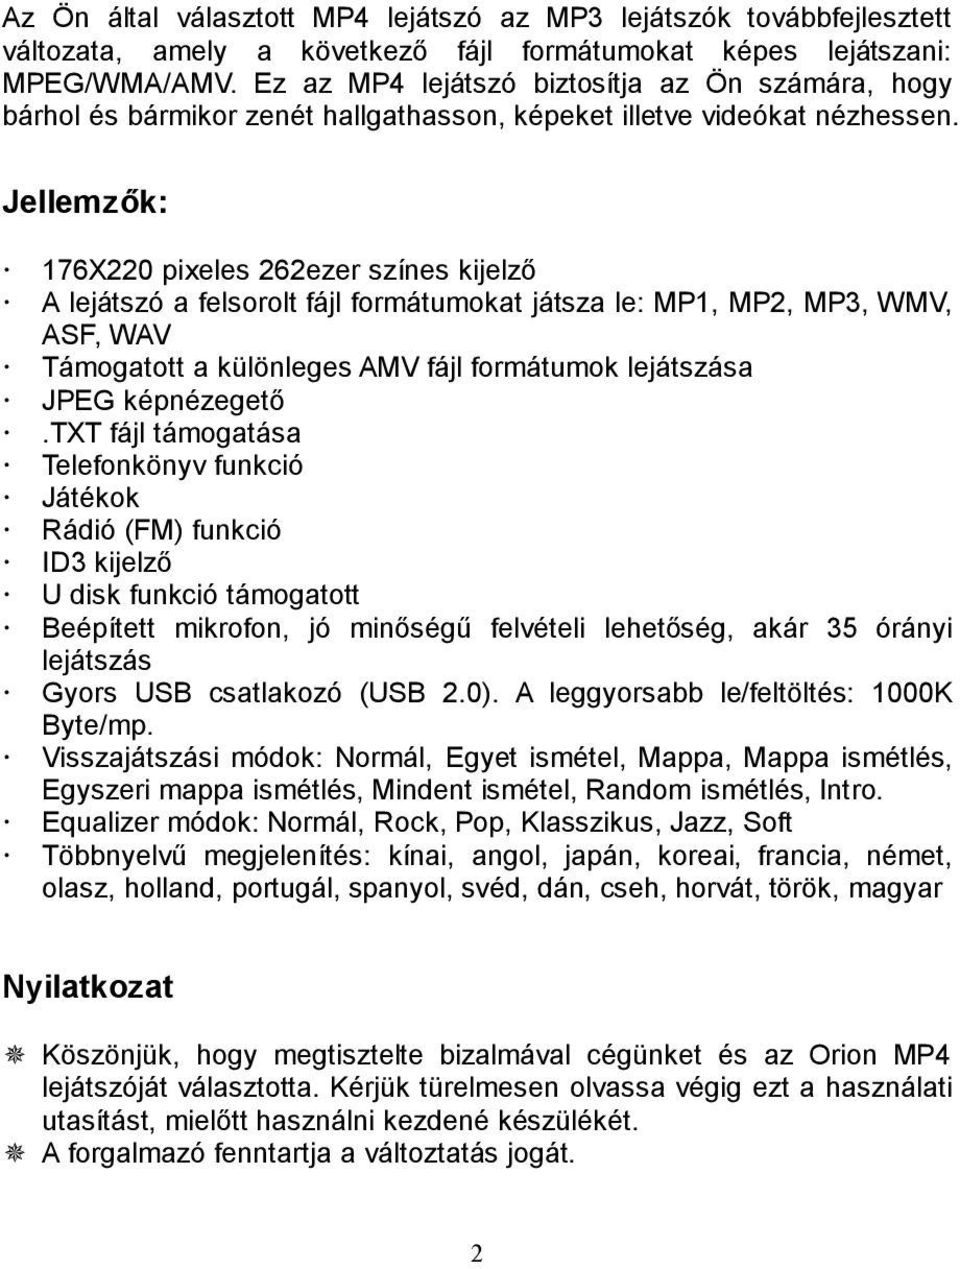 MP4 LEJÁTSZÓ Modell: OMP4-221 OMP PDF Ingyenes letöltés